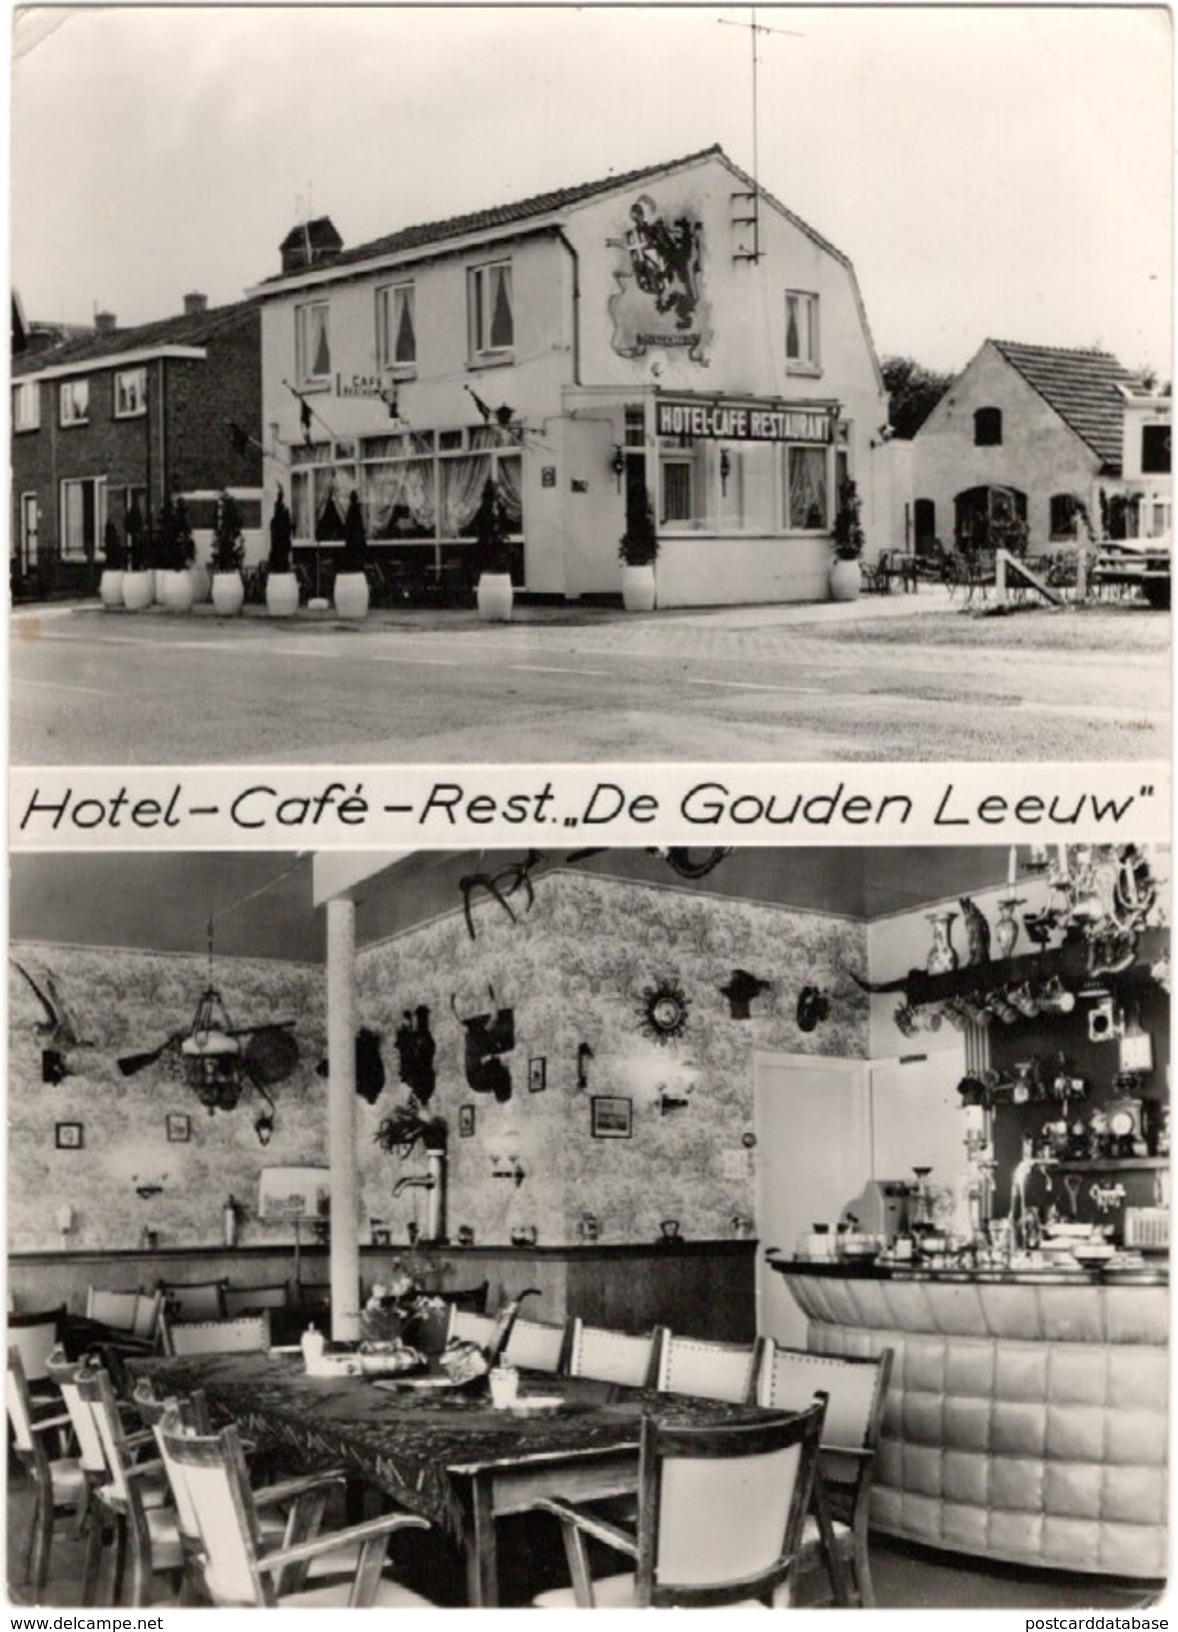 Hotel Café Restaurant De Gouden Leeuw - Veenendaal - Veenendaal